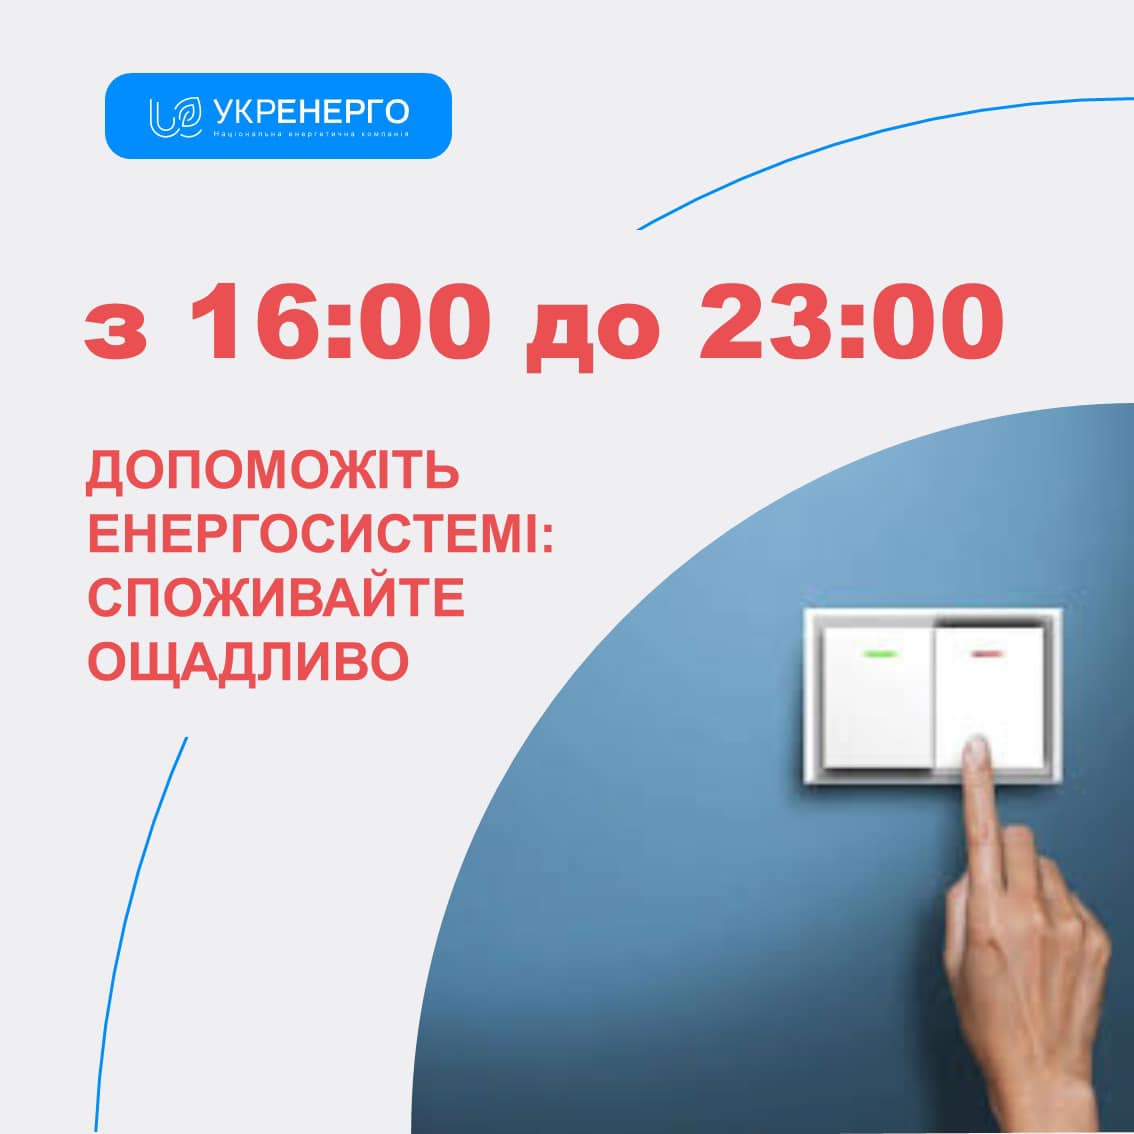 Укренерго закликає українців споживати електроенергію ощадливо з 16:00 до 23:00